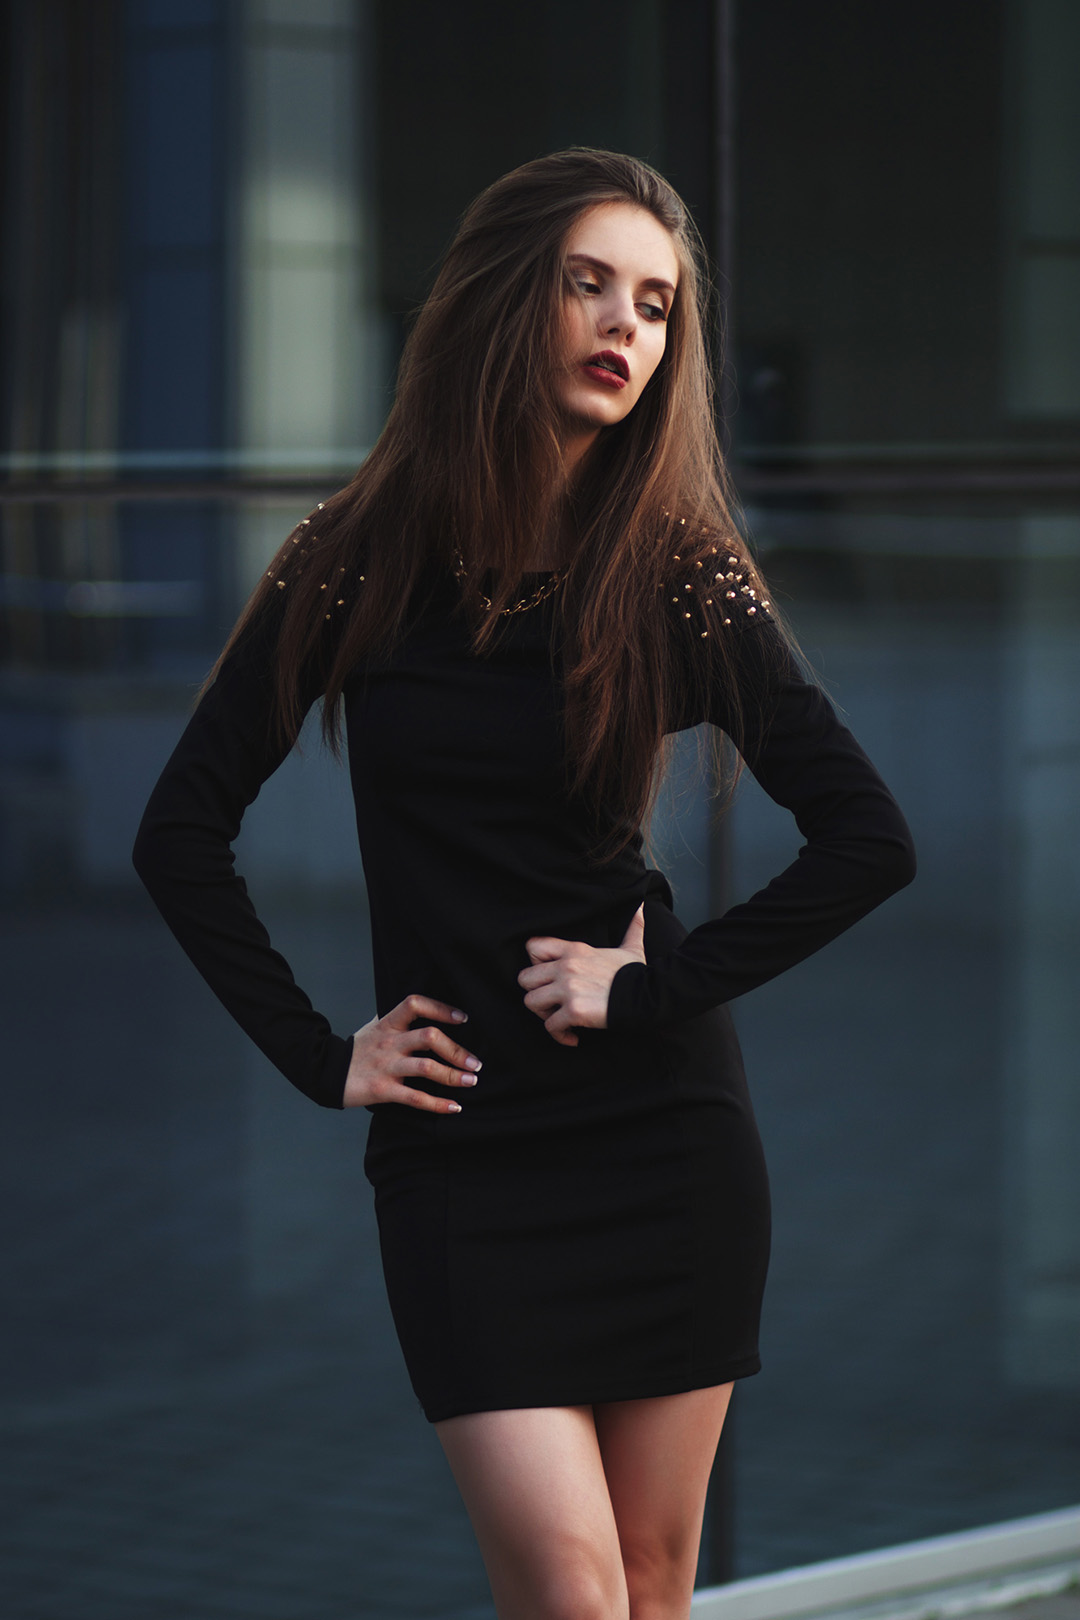 Прекрасная портретная фотосессия в тёмном стиле с очень талантливой моделью Алесей Лягиной